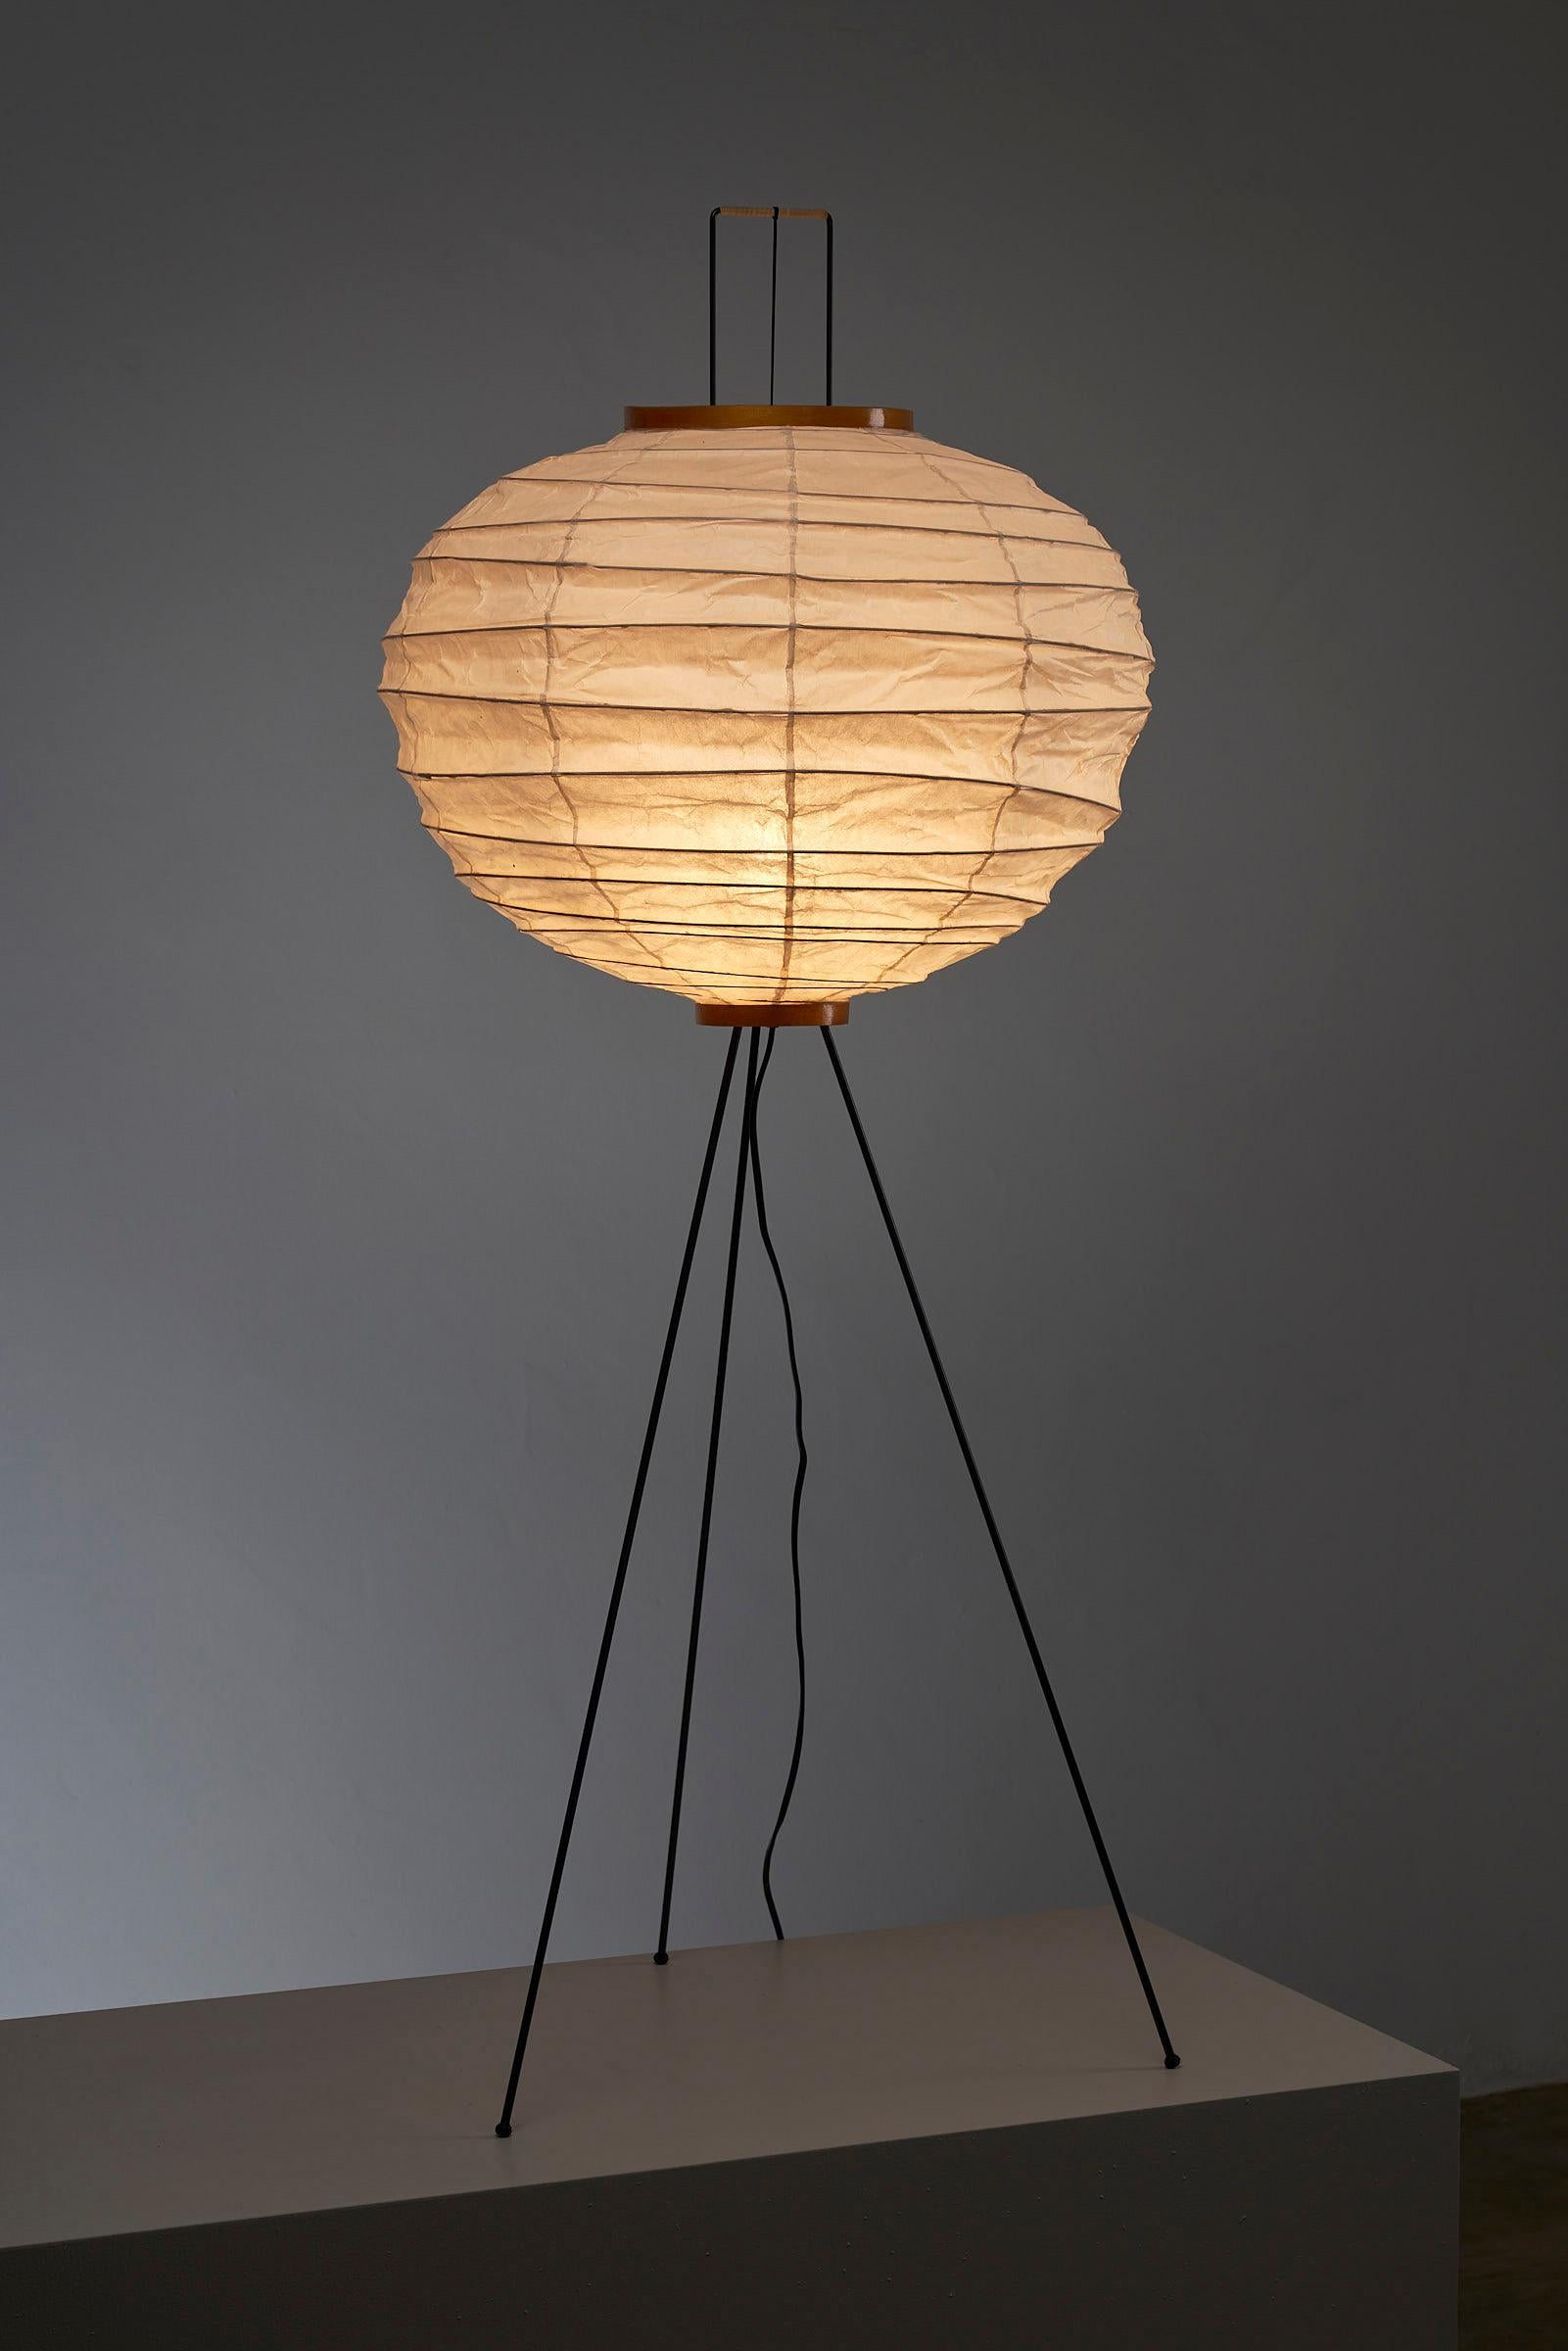 Was diese spezielle Akari-Lampe noch außergewöhnlicher macht, ist ihr makelloser Zustand und ihre Geschichte. Diese Lampe wurde noch nie benutzt und ist seit ihrer Herstellung in den 1950er Jahren in ihrem ursprünglichen Zustand erhalten geblieben.